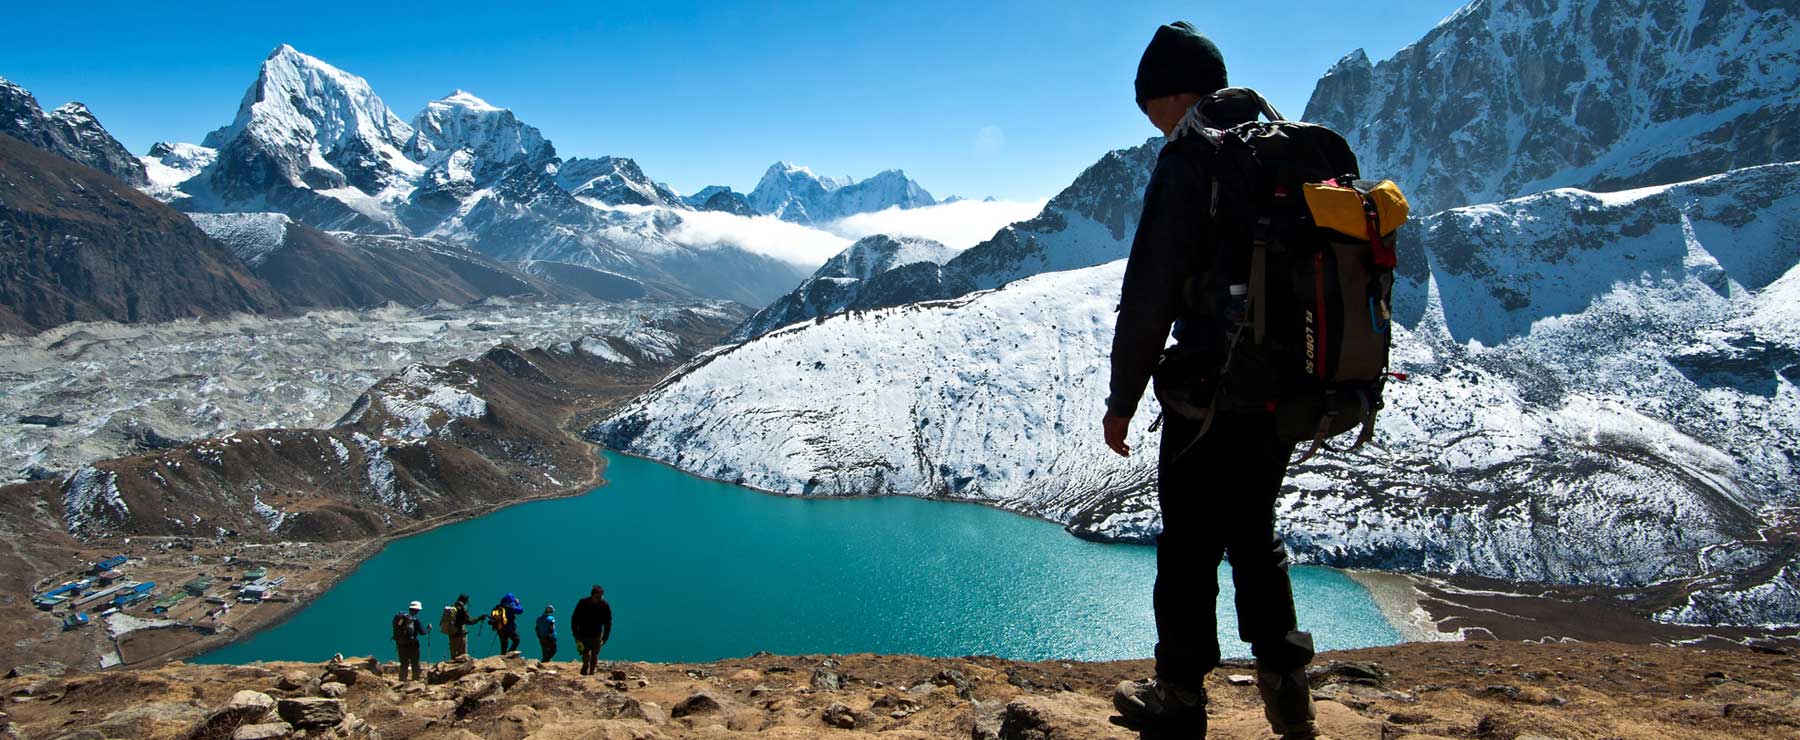 5 Ultimate Adventure Activities In Nepal 2021